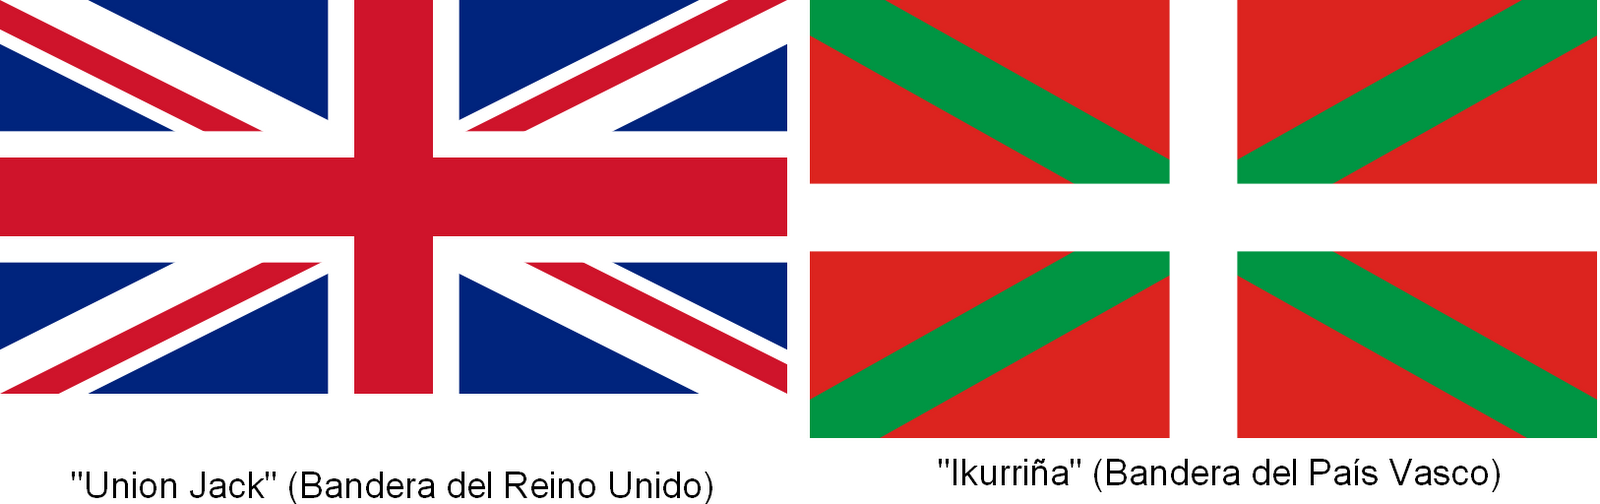 Comparativa de banderas de Reino Unido y el País Vasco